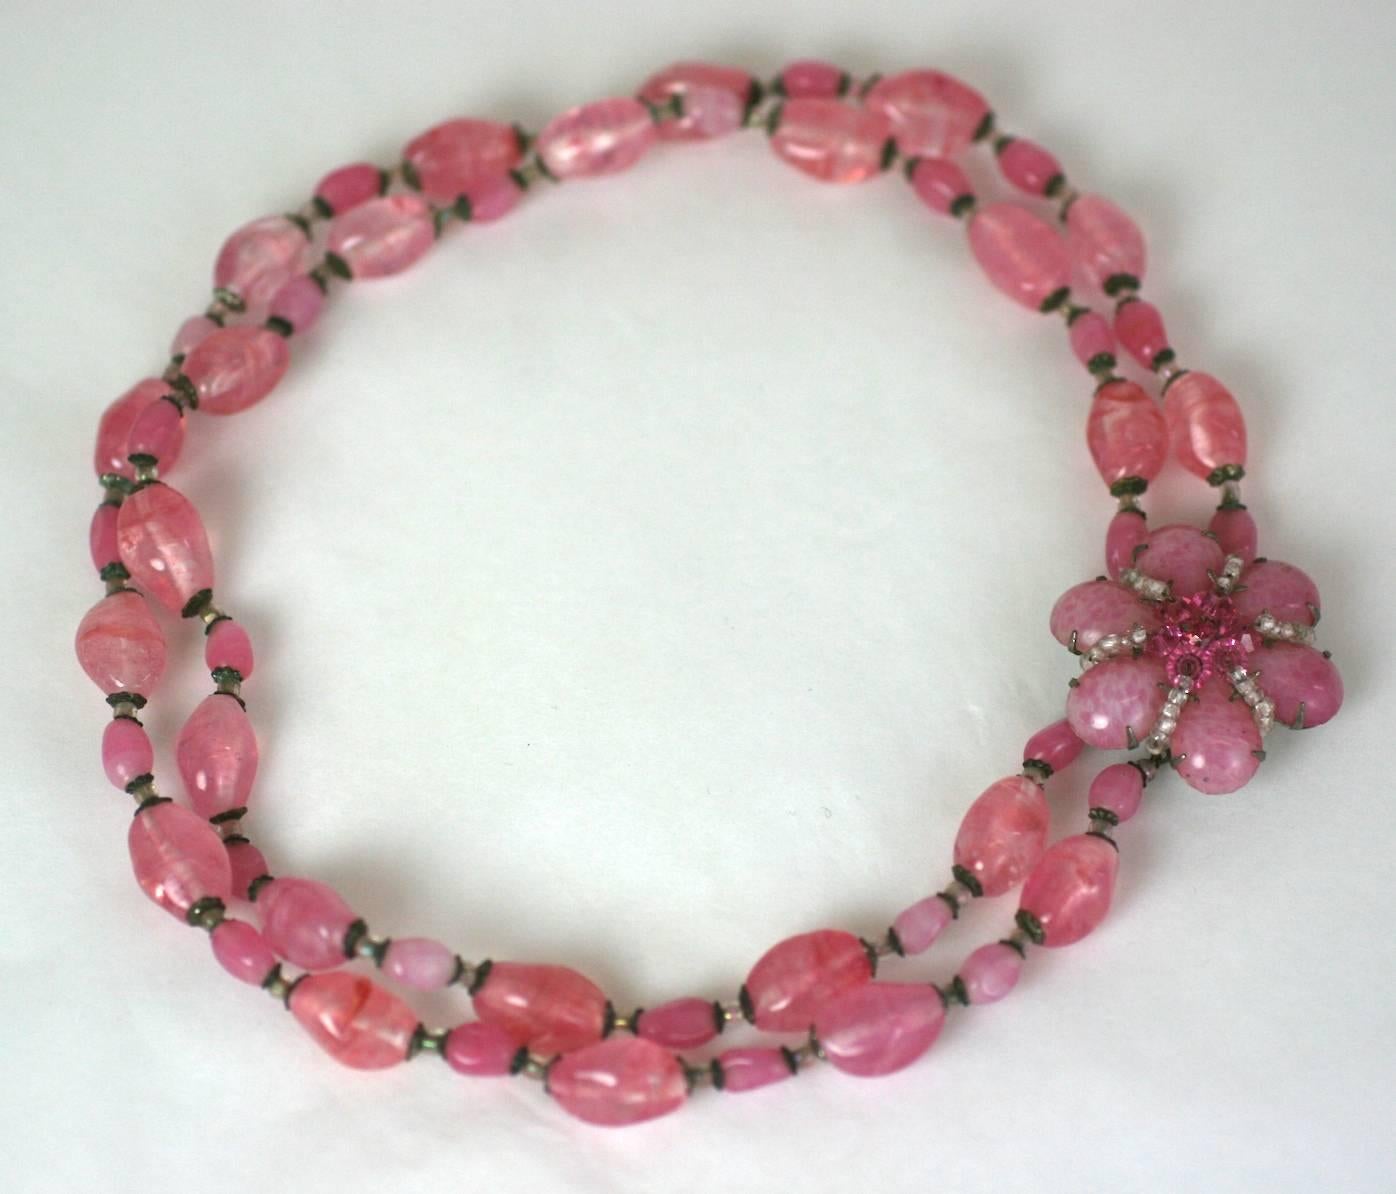 Miriam Haskell Collier de perles en pate de verre rose avec fermoir floral. Des perles en pate de verre rose chiné sont utilisées avec des intercalaires en cristal et un fermoir en perles cousu à la main. États-Unis des années 1950. 
15.5